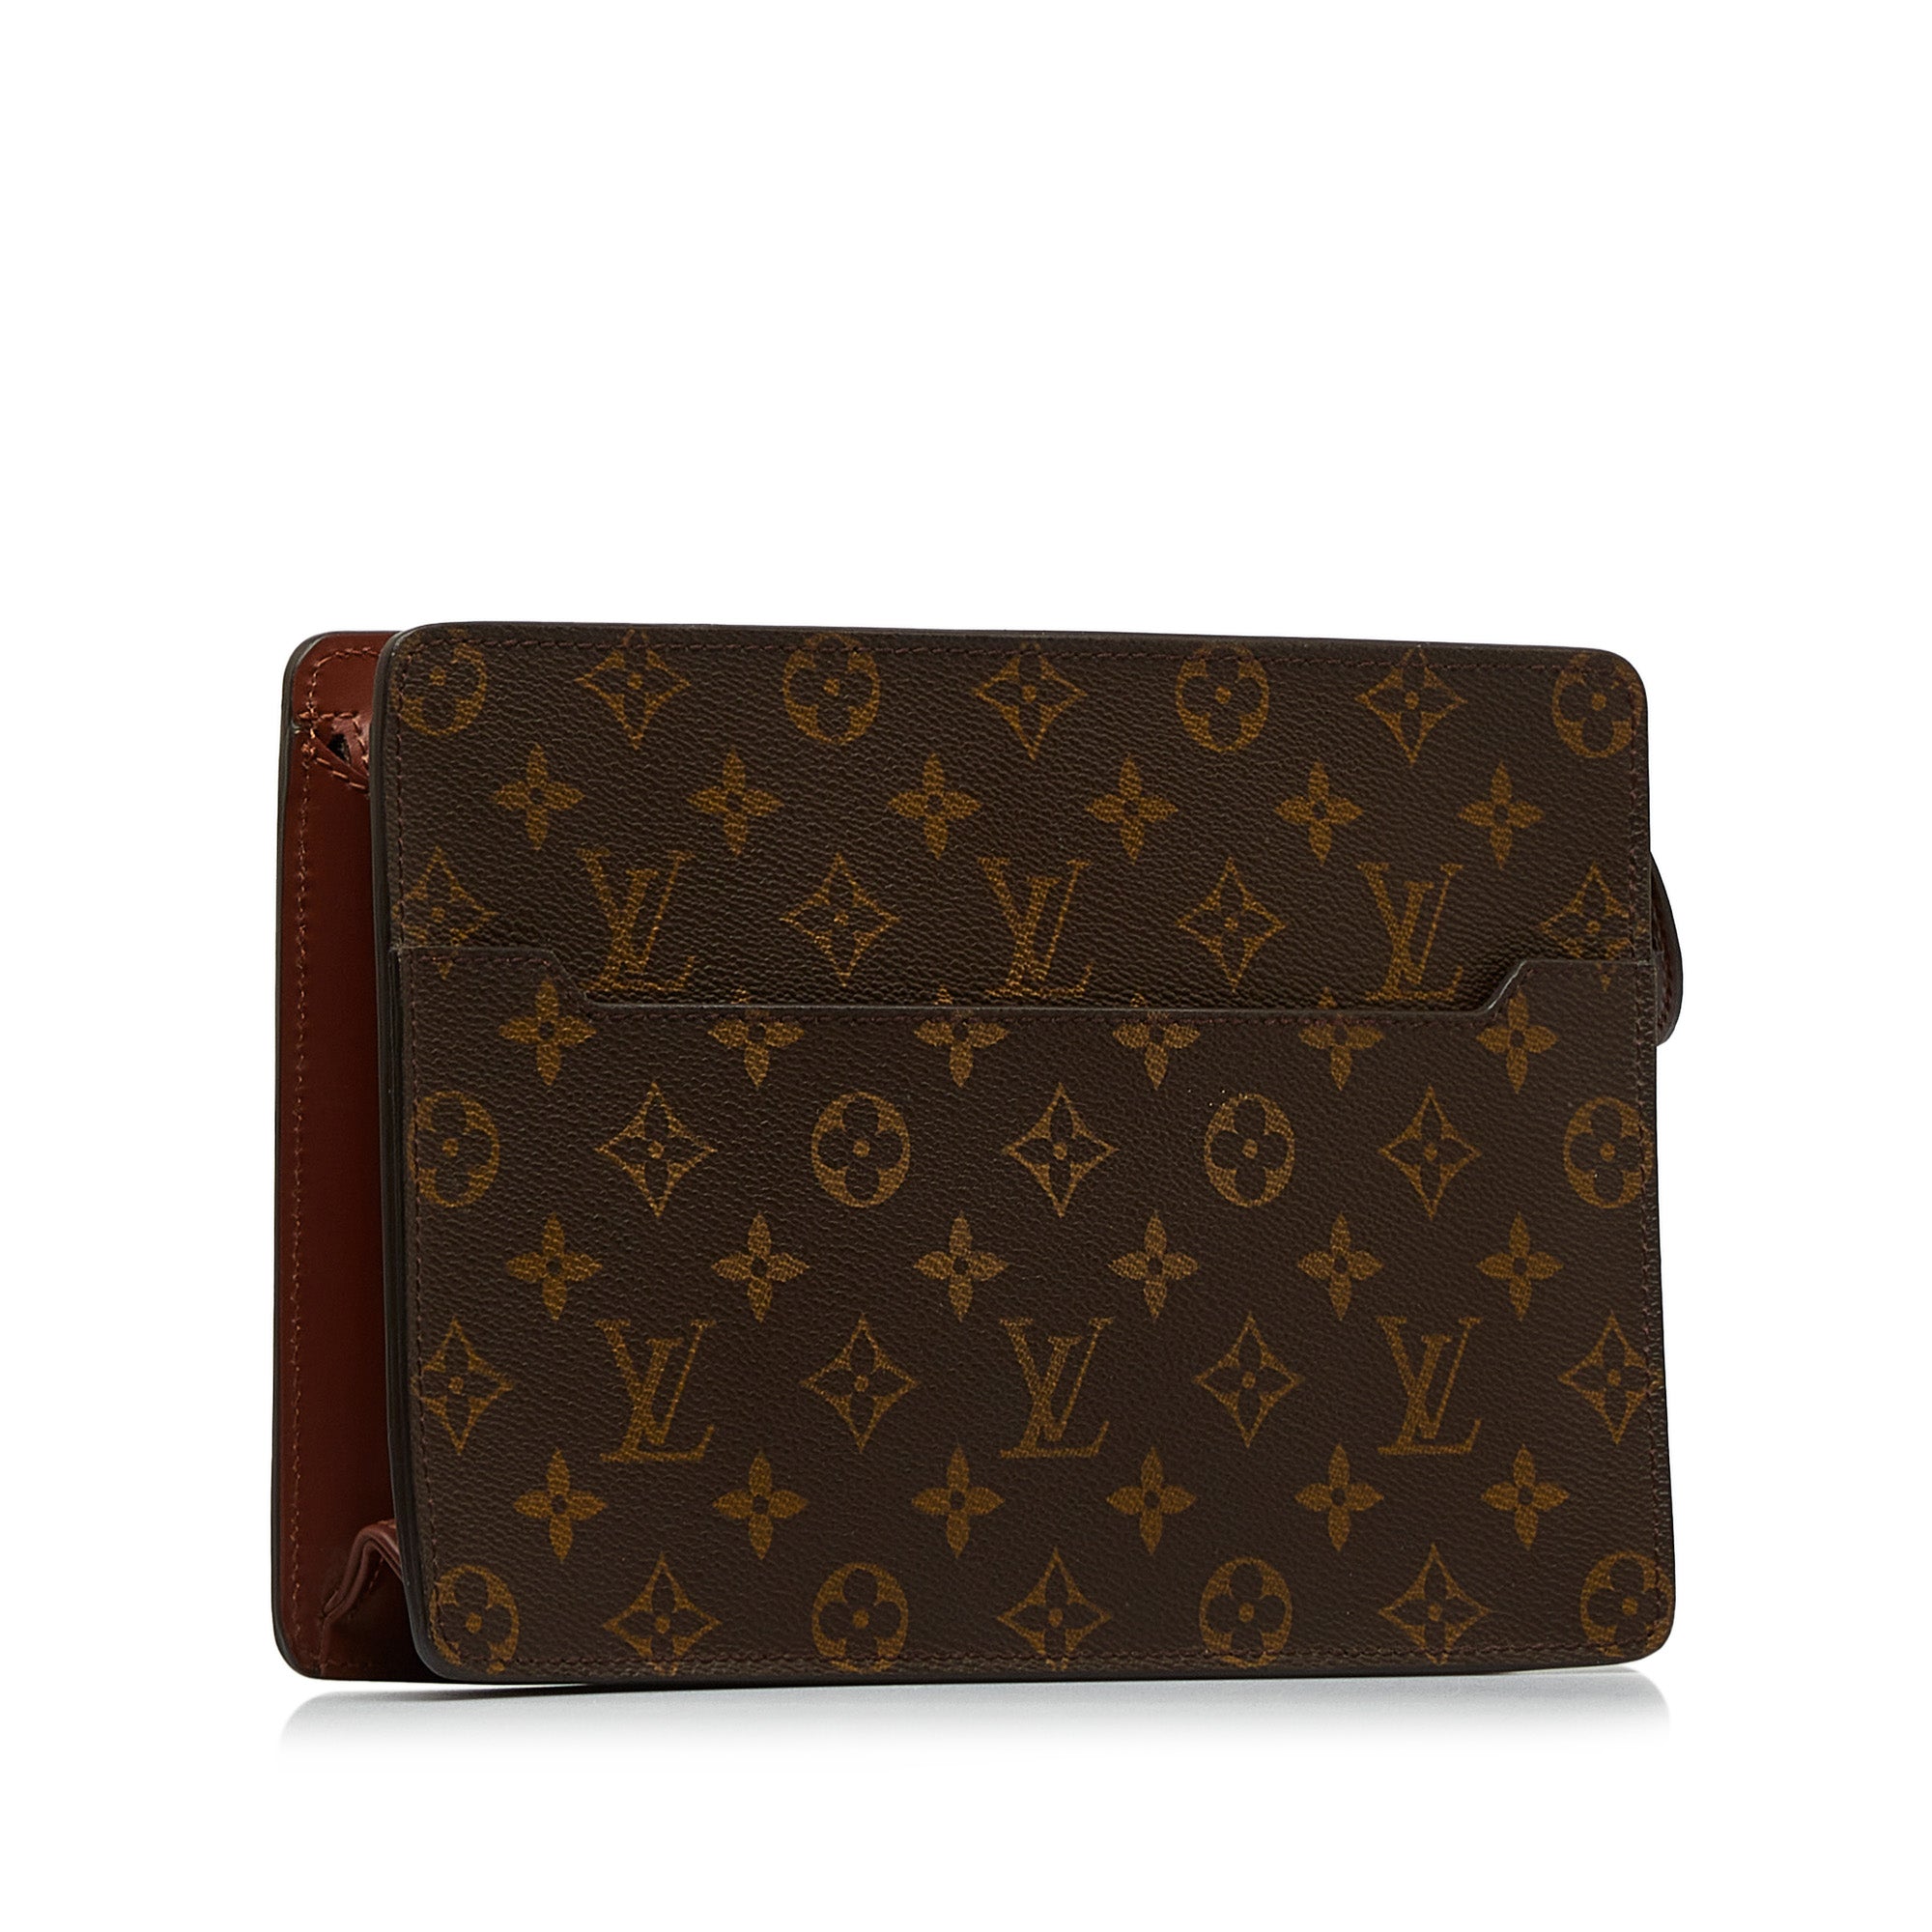 Louis Vuitton Monogram Favorite Clutch PM Bag (Authentic Pre Owned)  Louis  vuitton handbags outlet, Louis vuitton bag, Louis vuitton purse